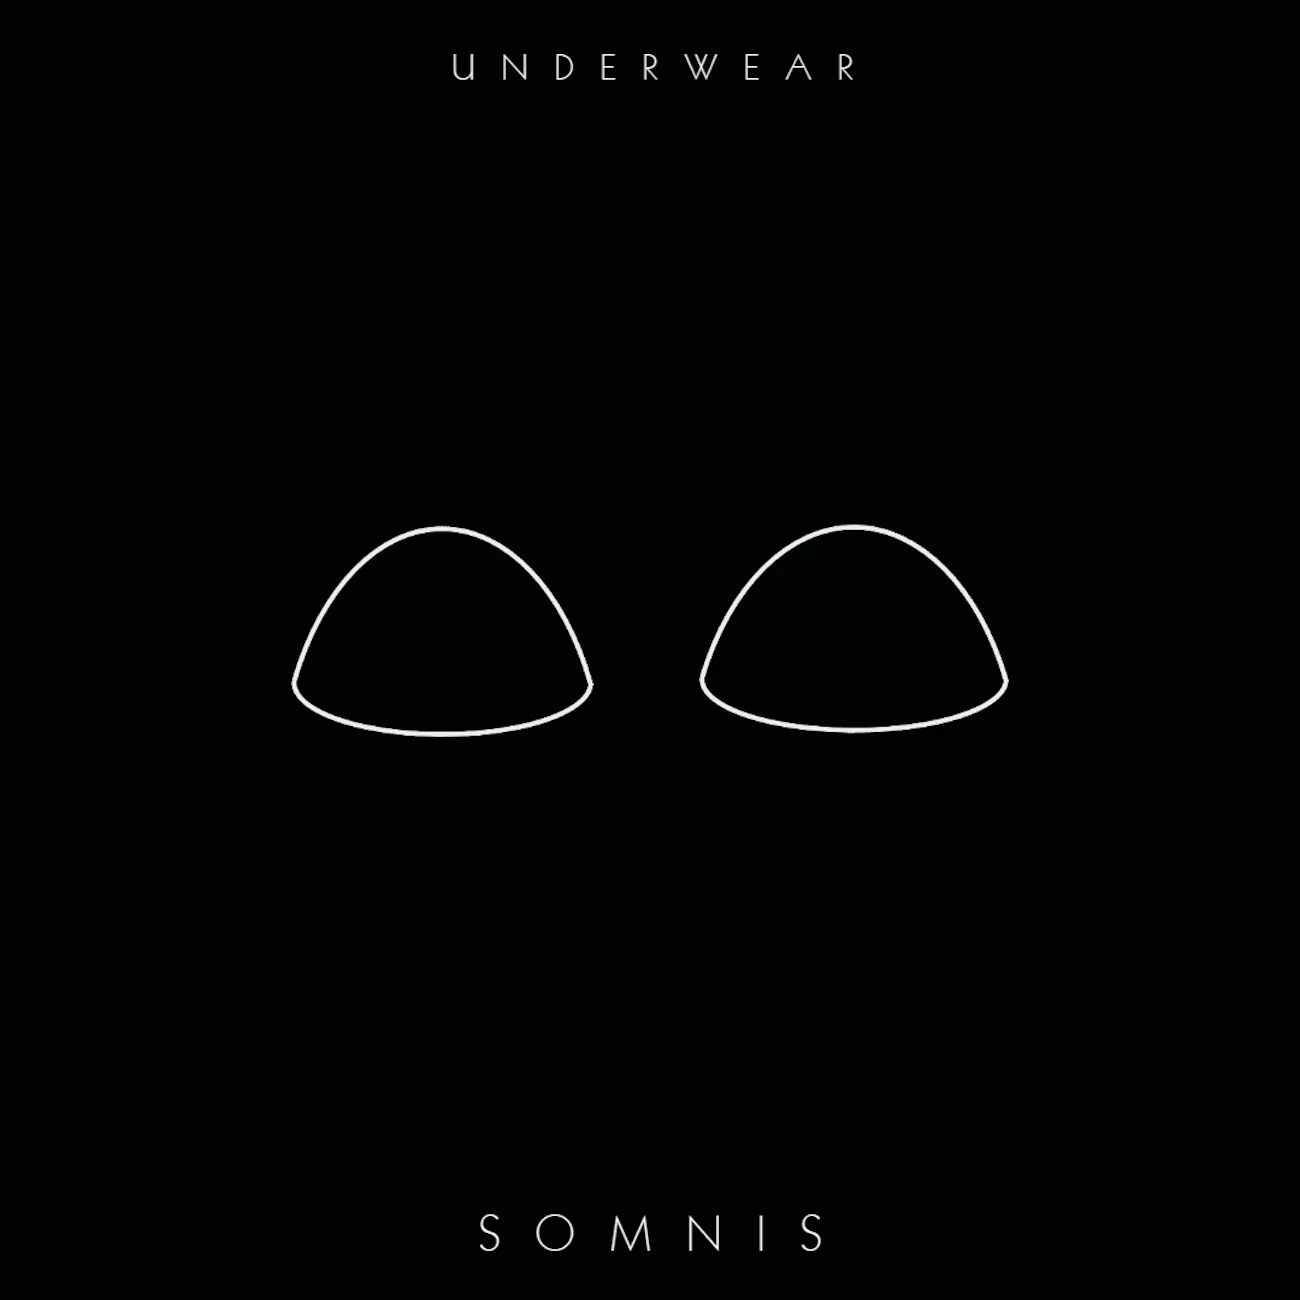 Feature image about Somnis underwear